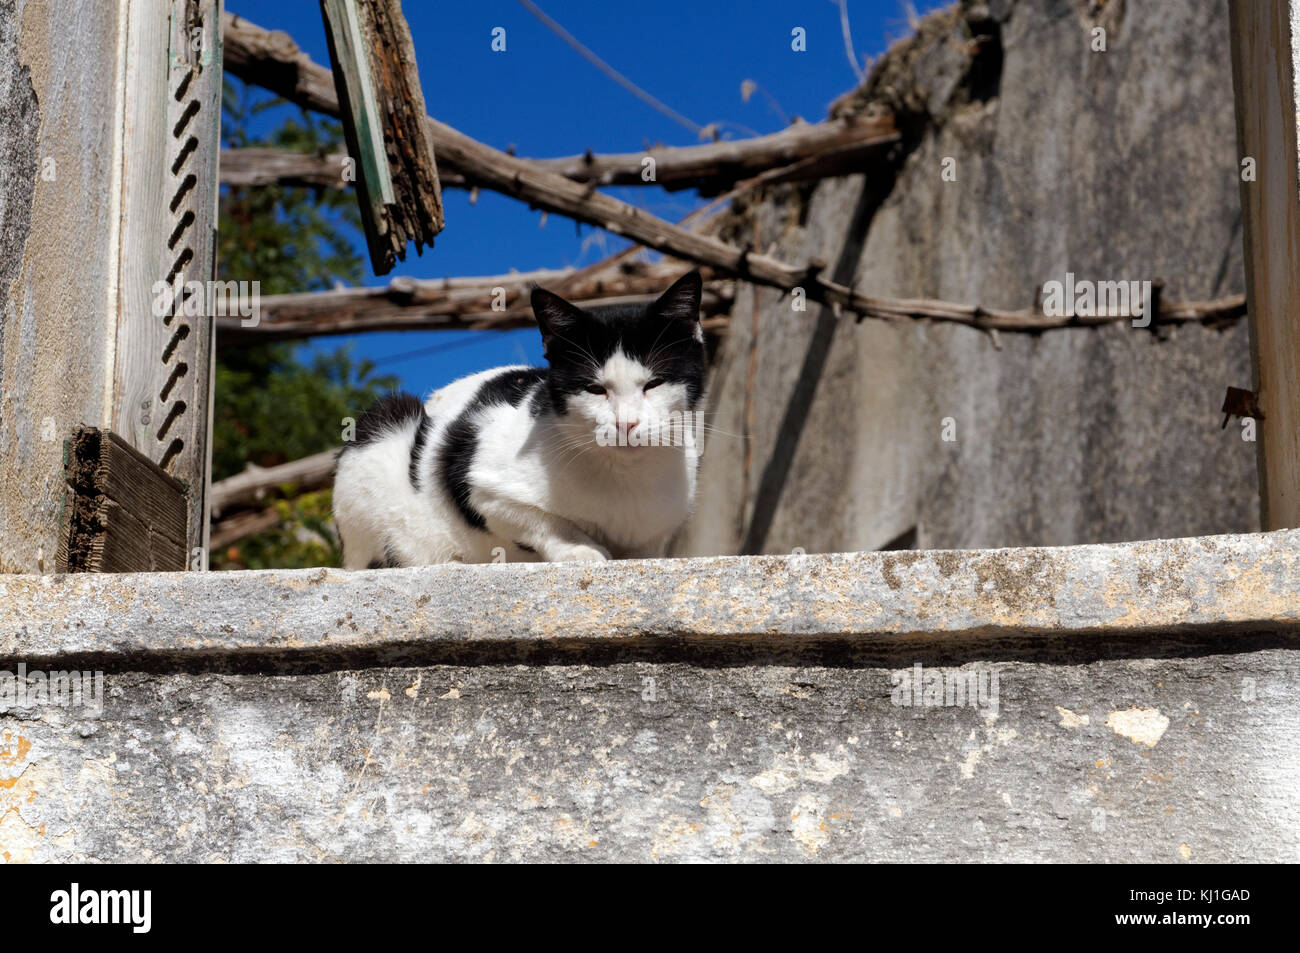 Chat grec on windowsill de bâtiment abandonné, Archangelos, Rhodes, Dodécanèse, Grèce. Banque D'Images